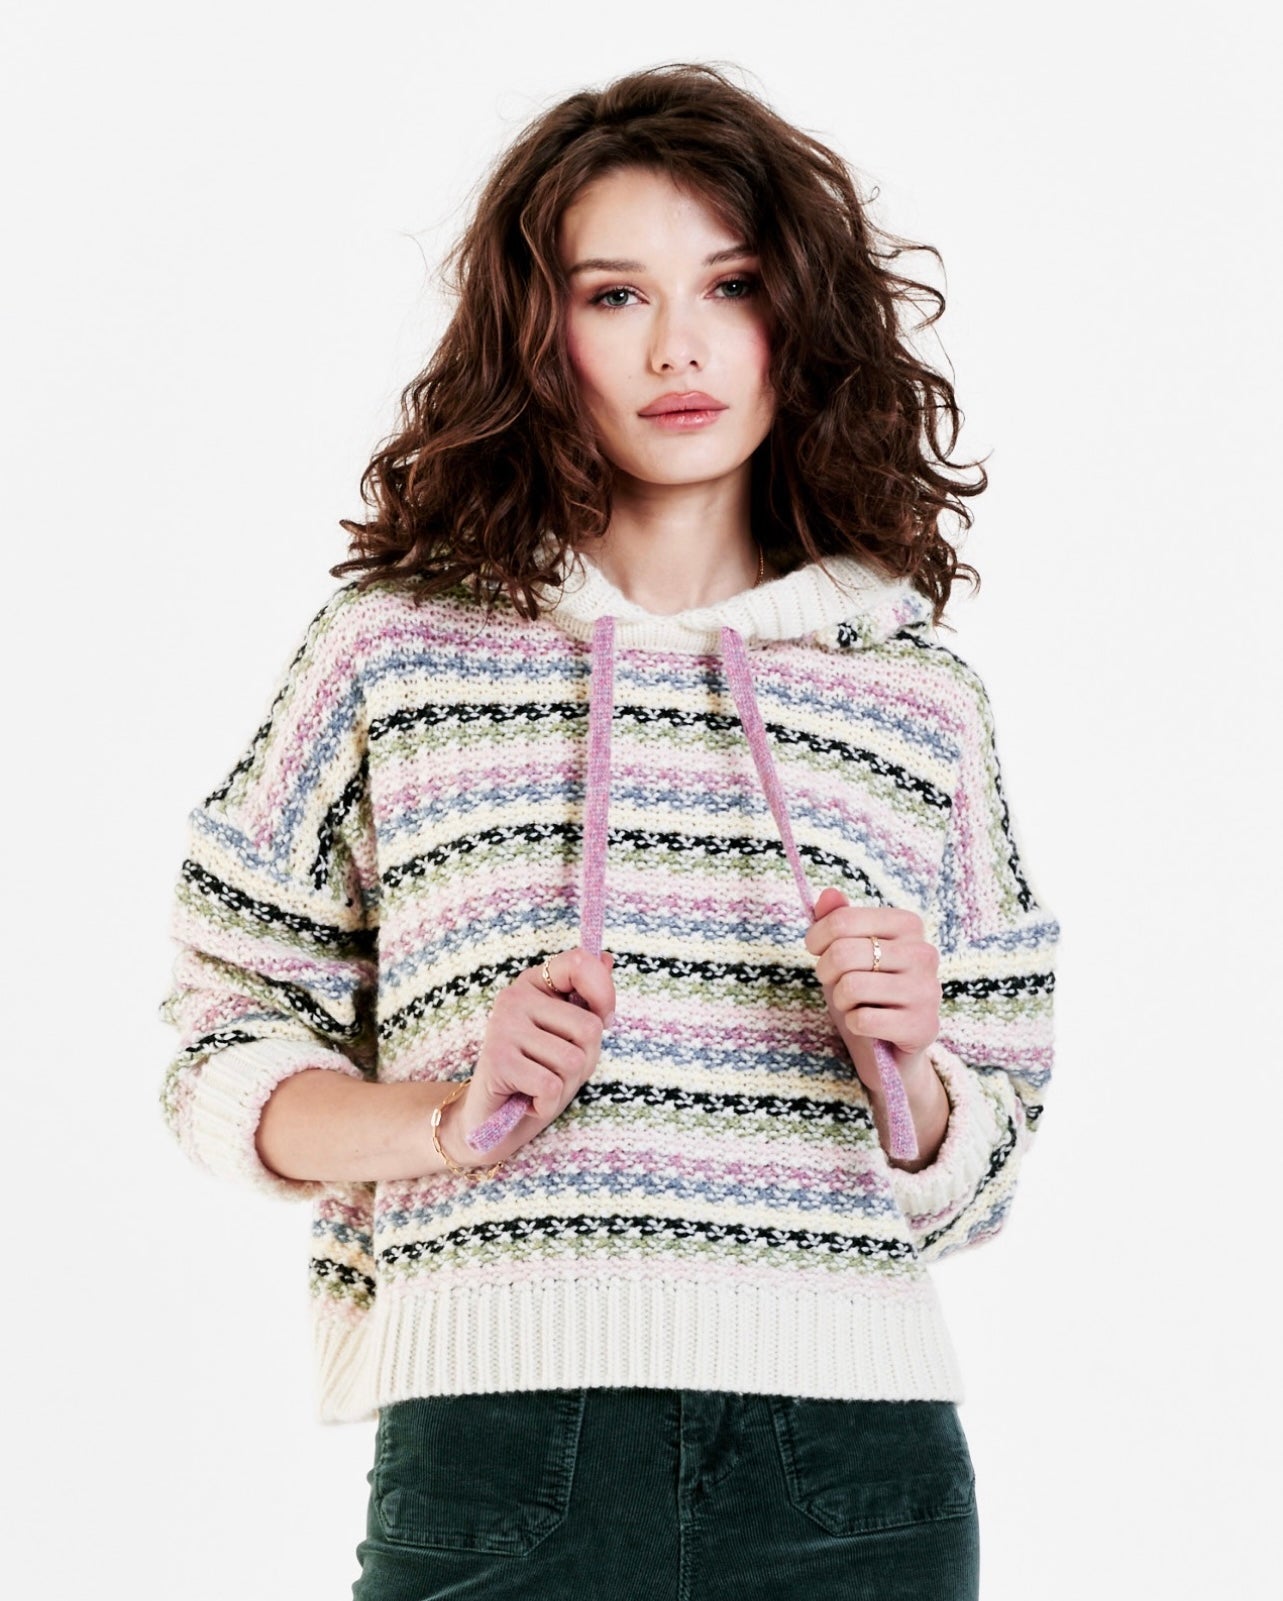 The Rosalie hoodie Sweater